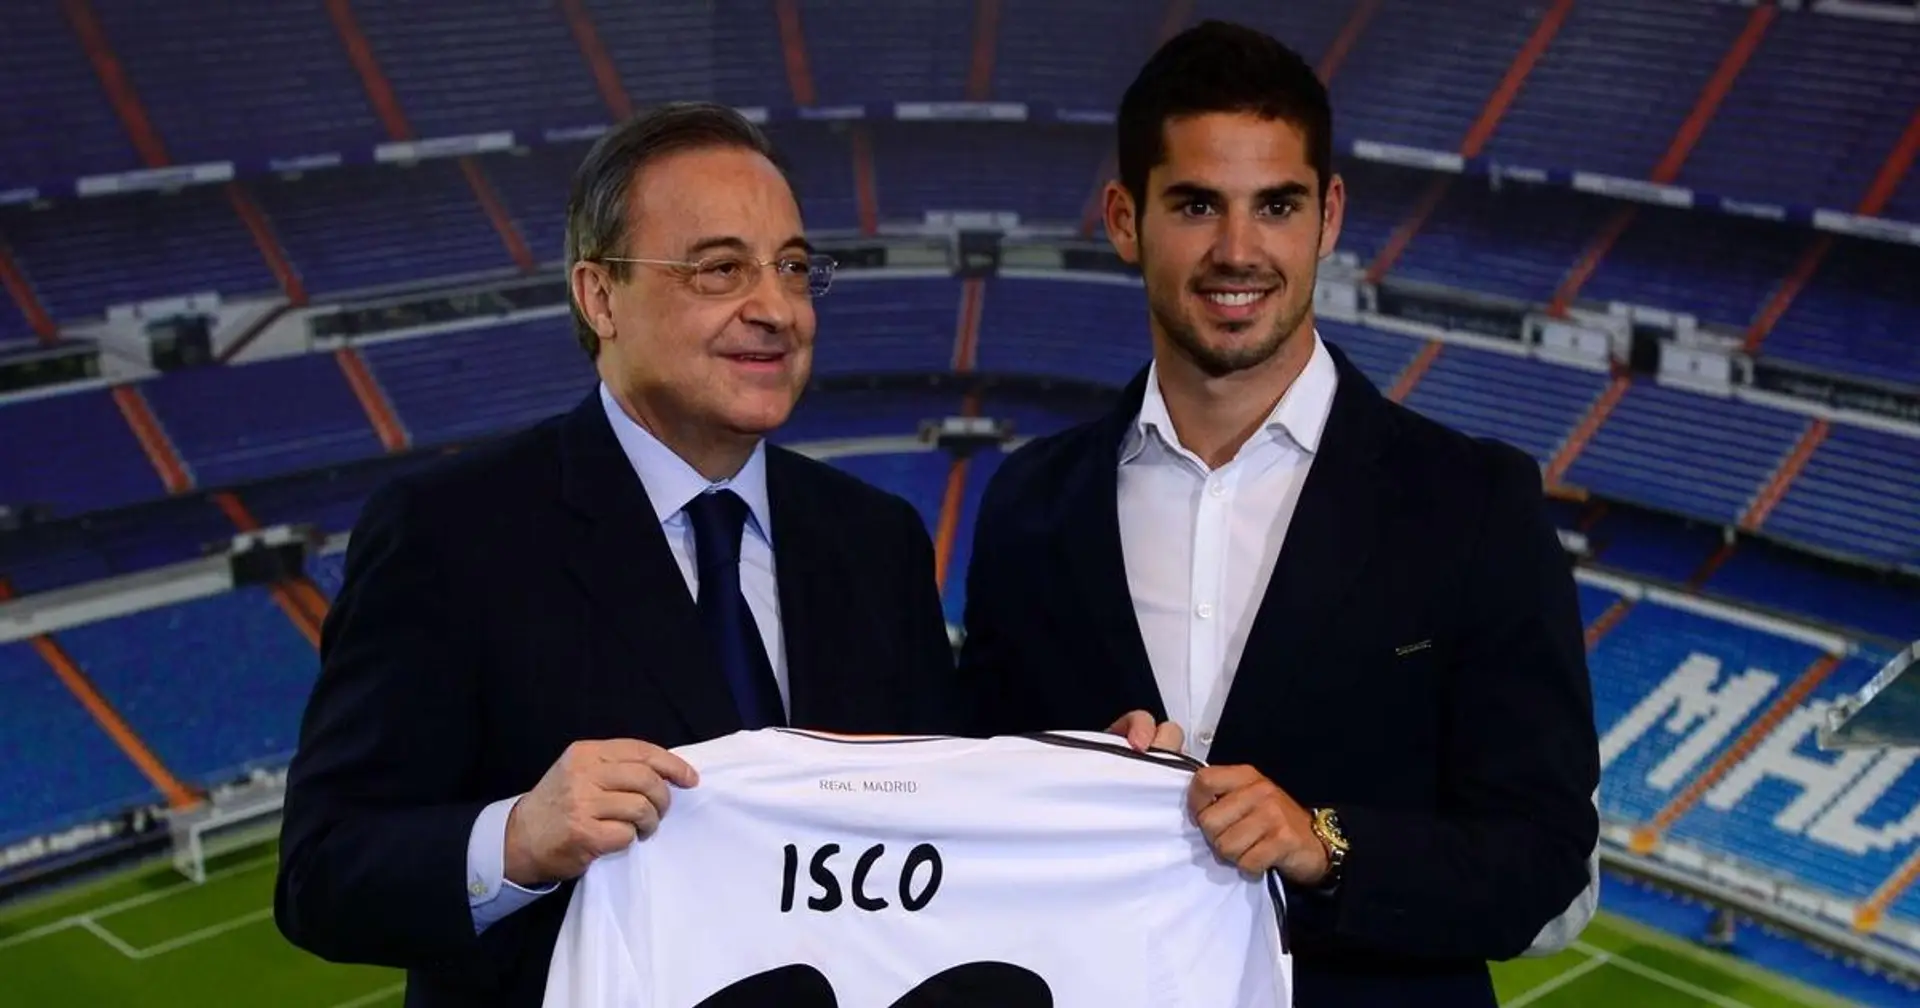 "Isco, Morata et Jese pour le futur! Vous parlez d'EXCITATION!": Comment les fans de Madrid ont réagi à la signature d'Isco en 2013